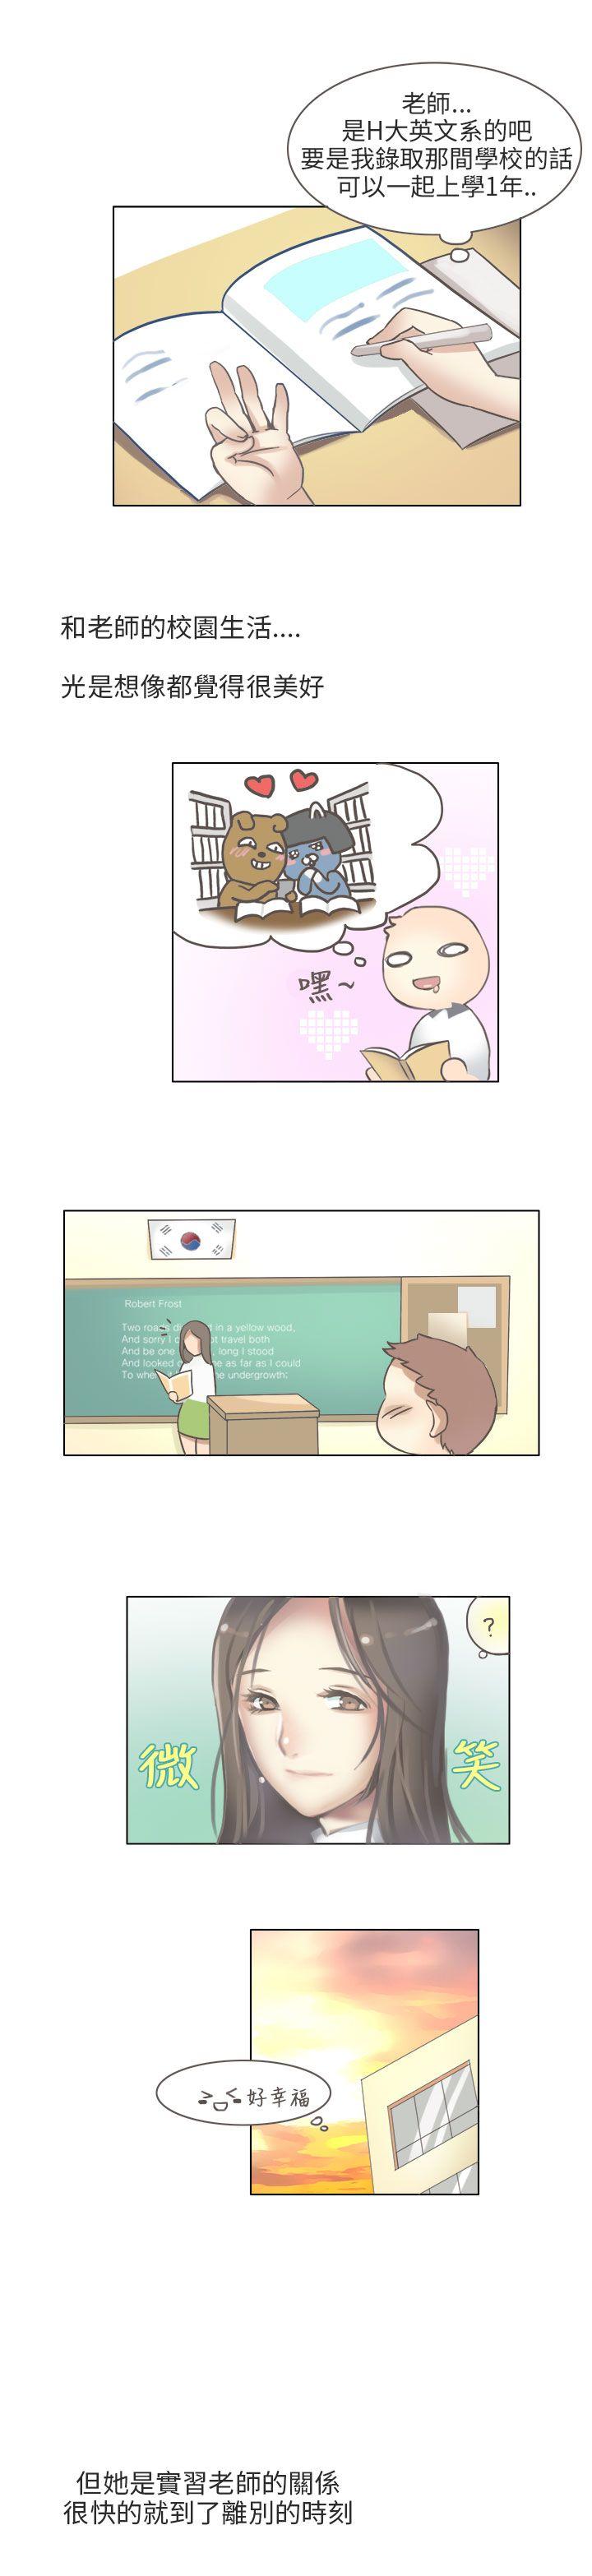 秘密Story第二季  与老师的再次相遇(中) 漫画图片5.jpg